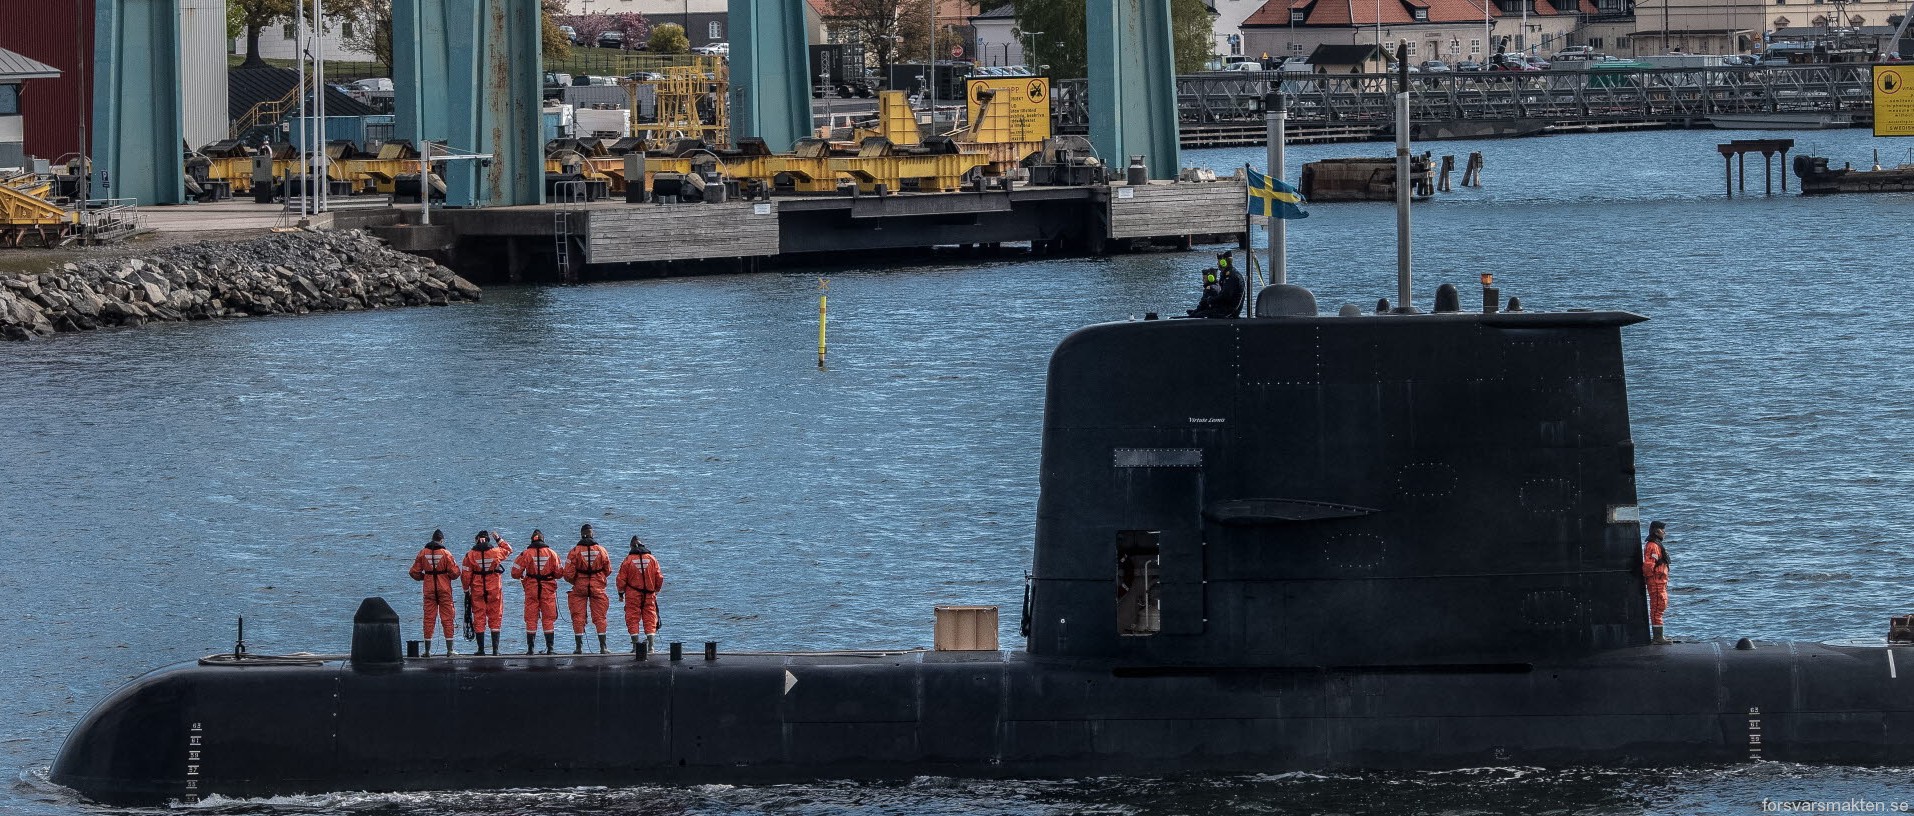 hswms hms gotland gtd class submarine ssk swedish navy svenska marinen försvarsmakten kockums 05